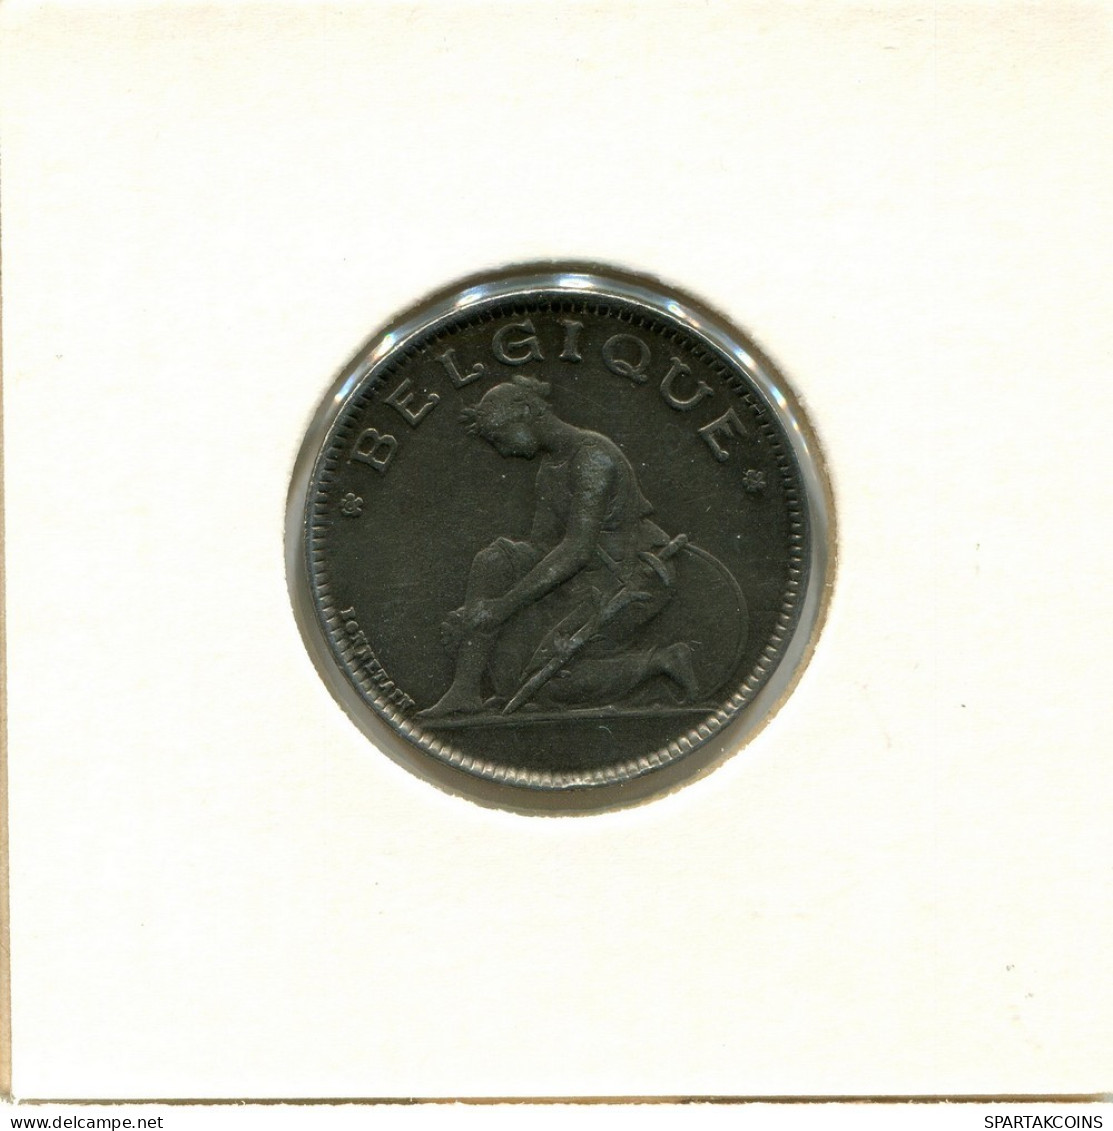 1 FRANC 1922 BÉLGICA BELGIUM Moneda FRENCH Text #BA389.E.A - 1 Frank